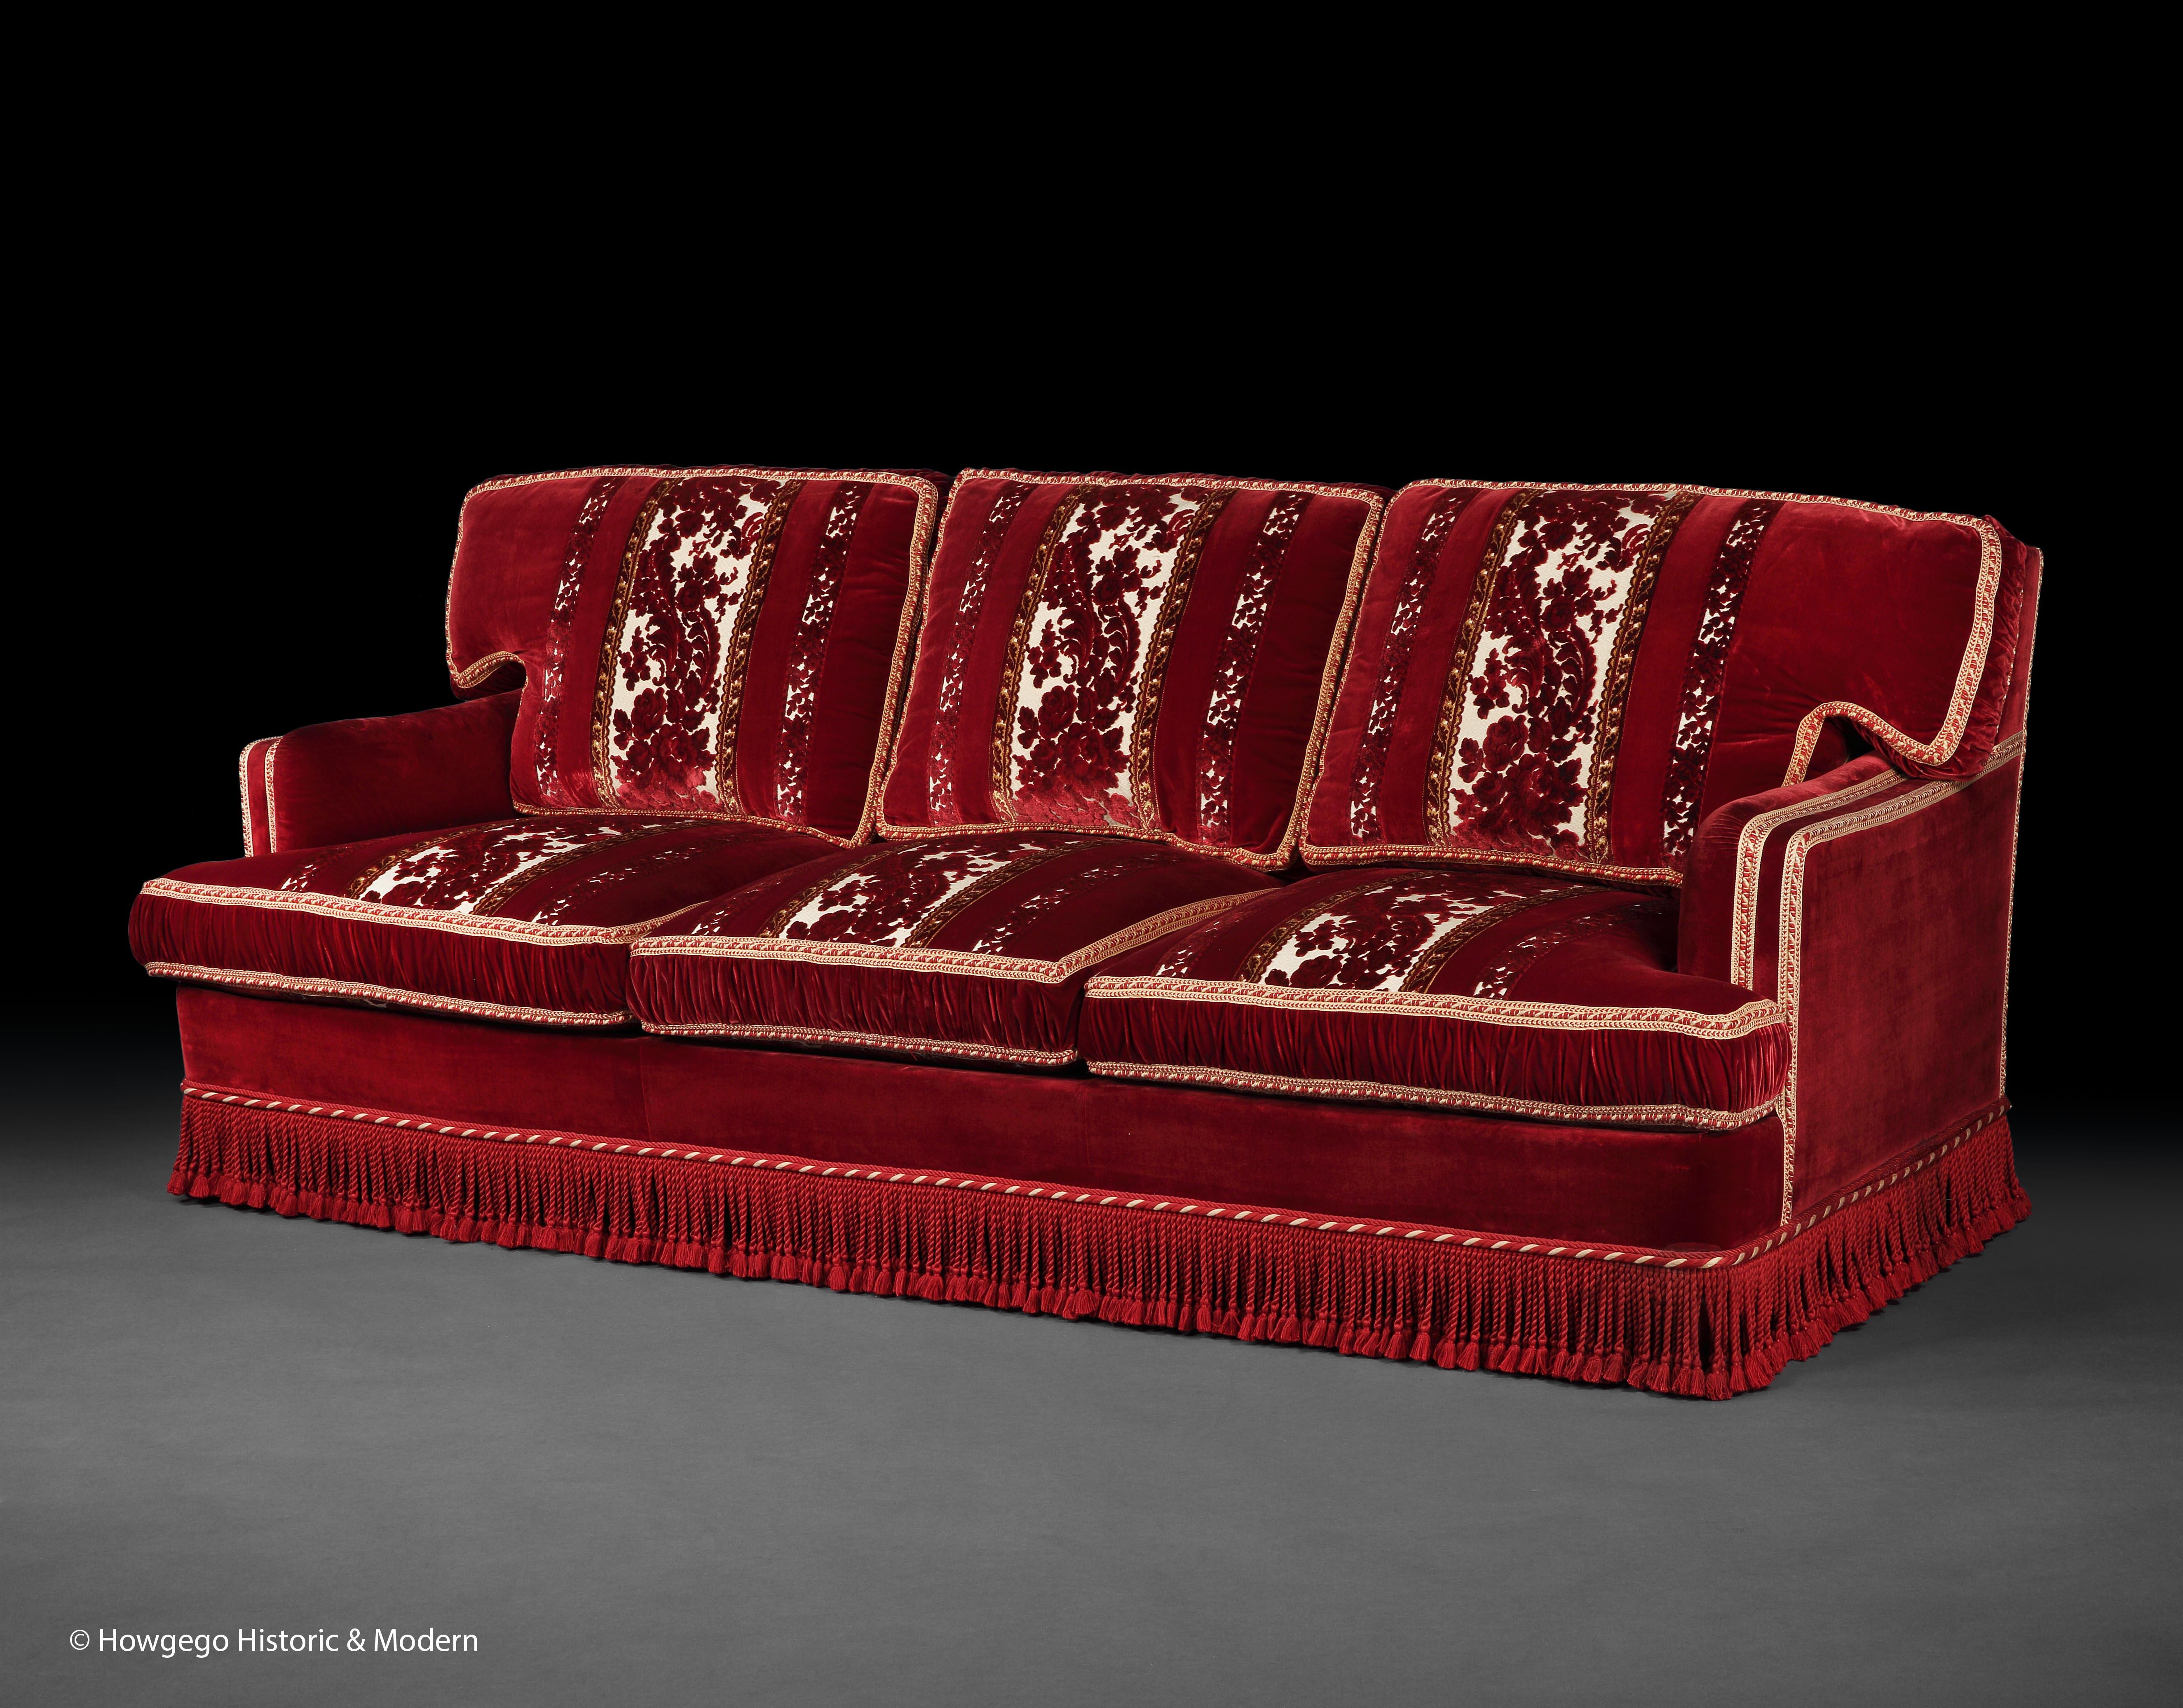 Ein opulentes Dreisitzer-Sofa aus zugeschnittenem Samt des italienischen Architekten und Designers Toni Facella Sensi della Penna

Dieses Sofa ist der Inbegriff von Eleganz, Opulenz und Komfort, die die von Facella Sensi della Penna gelieferten